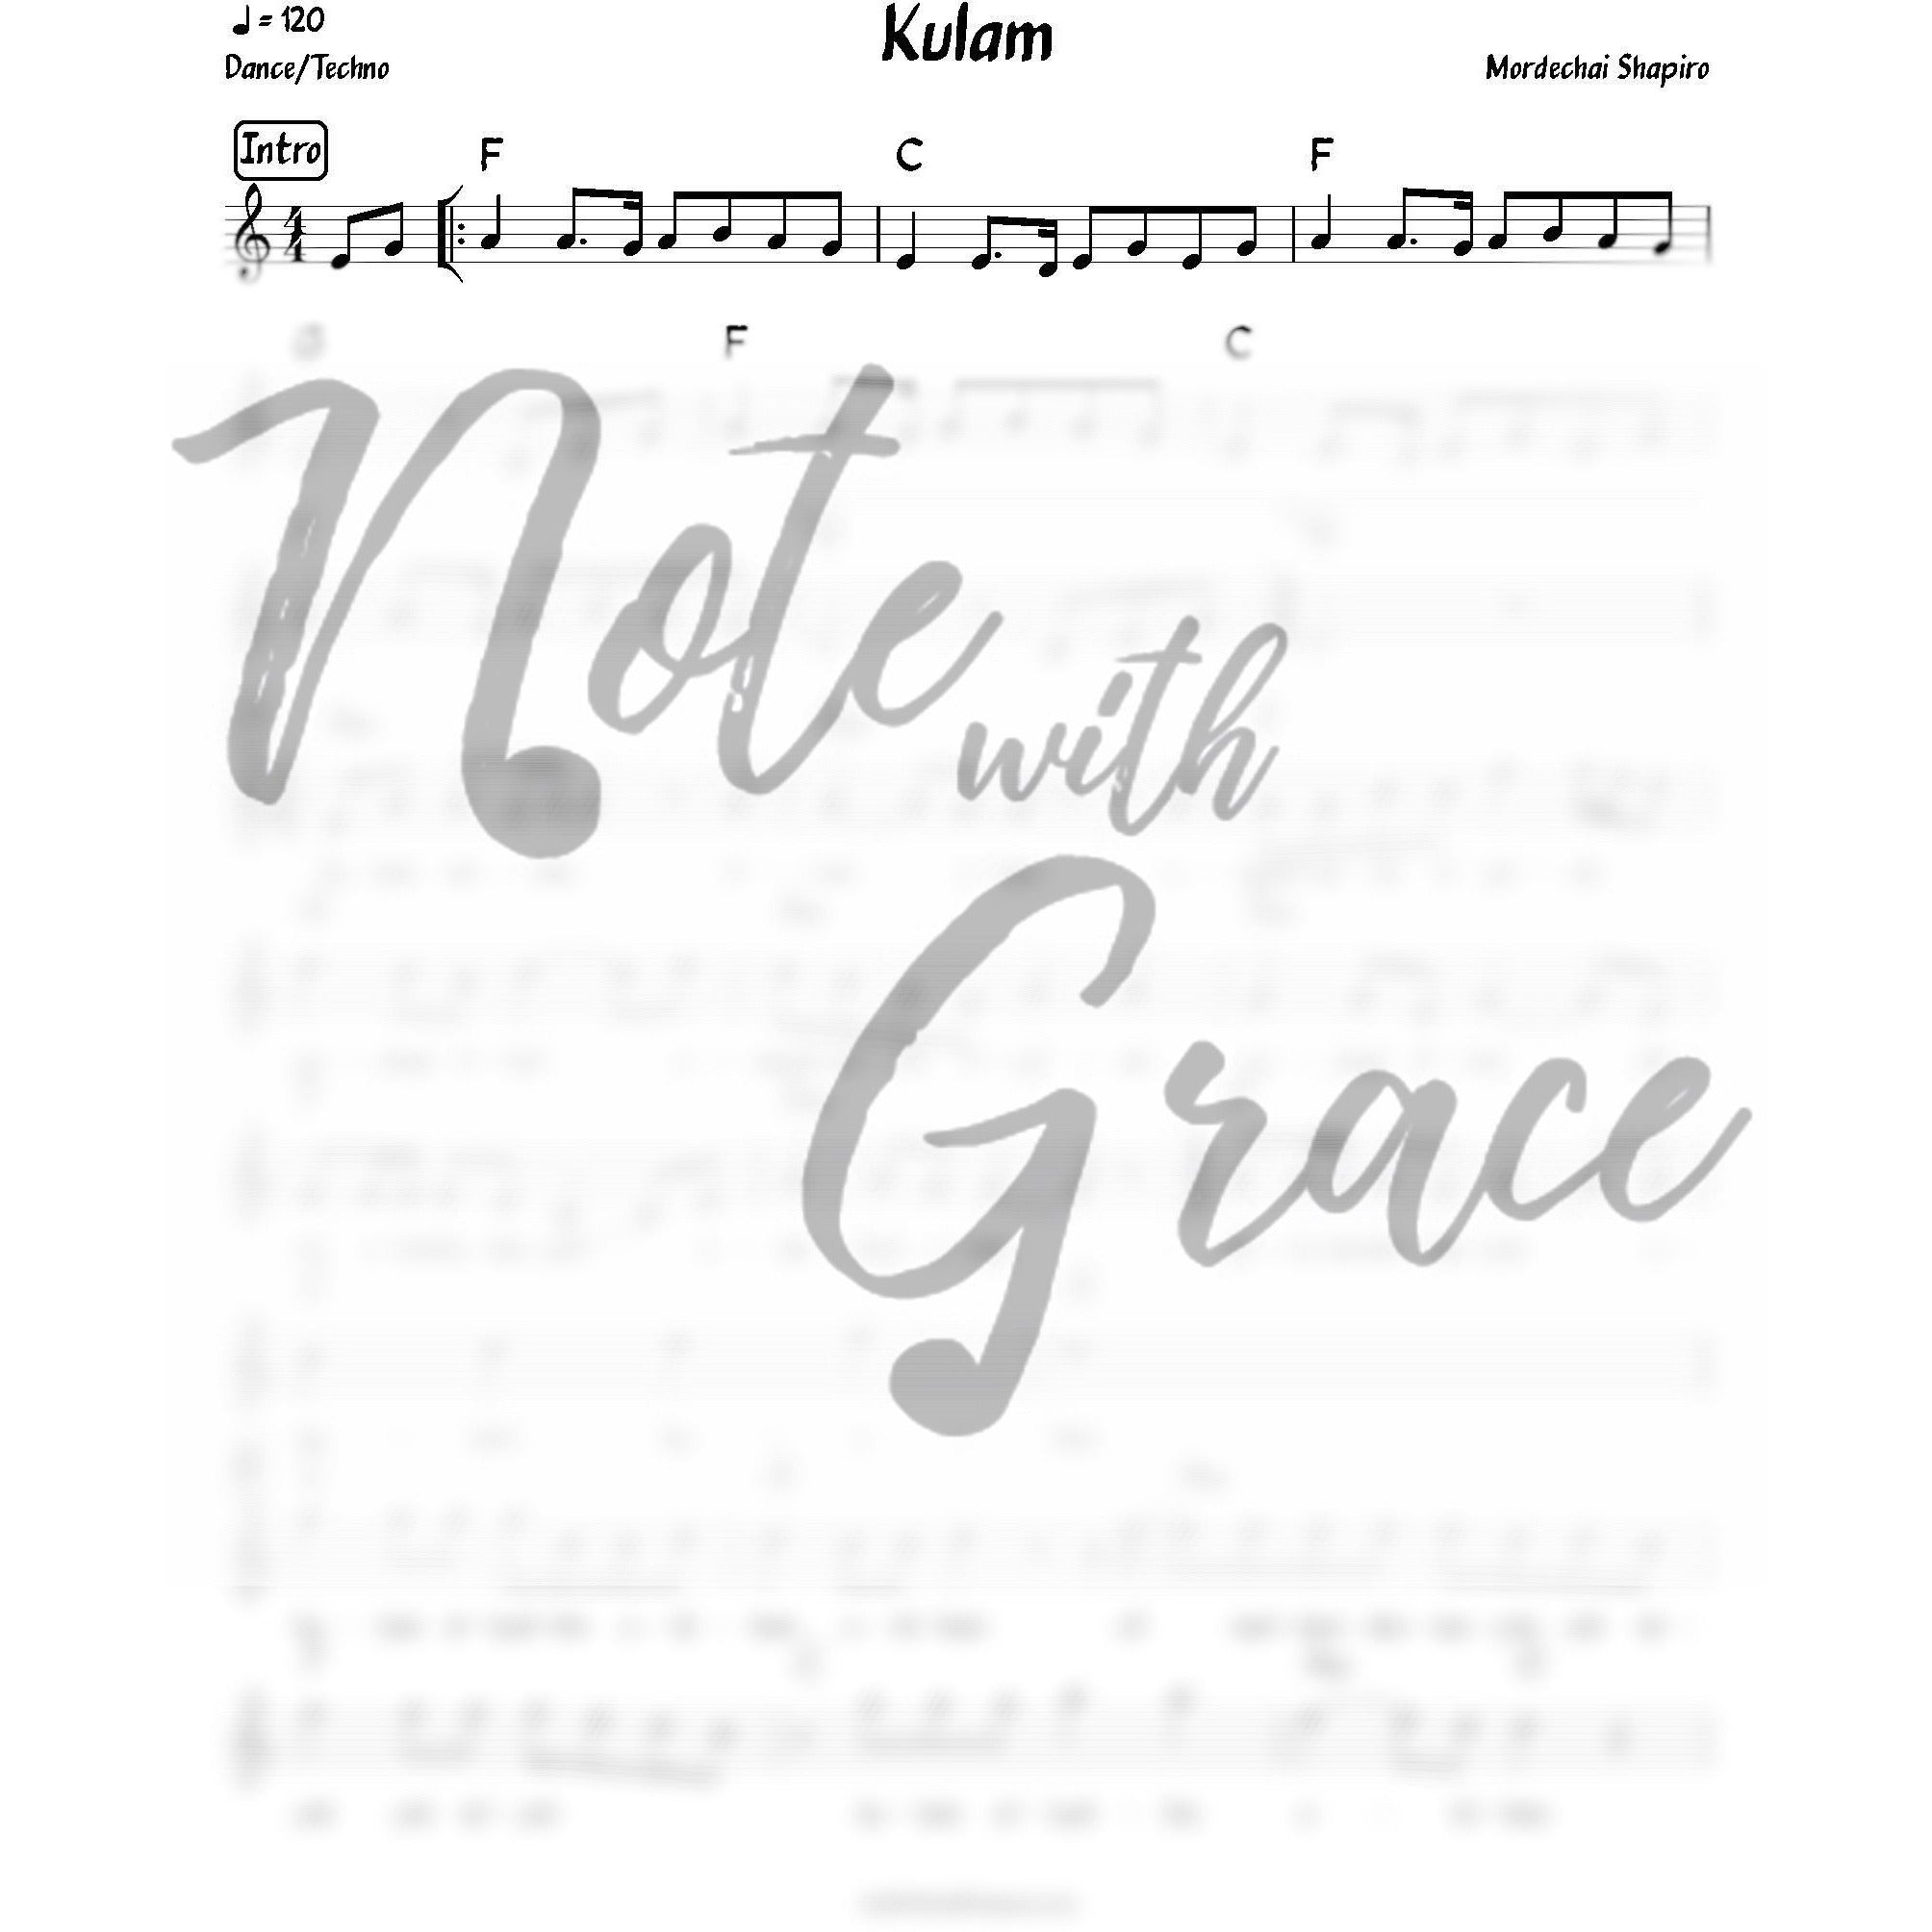 Kulam (Mordechai Shapiro) Album: Machar-Sheet music-NoteWithGrace.com